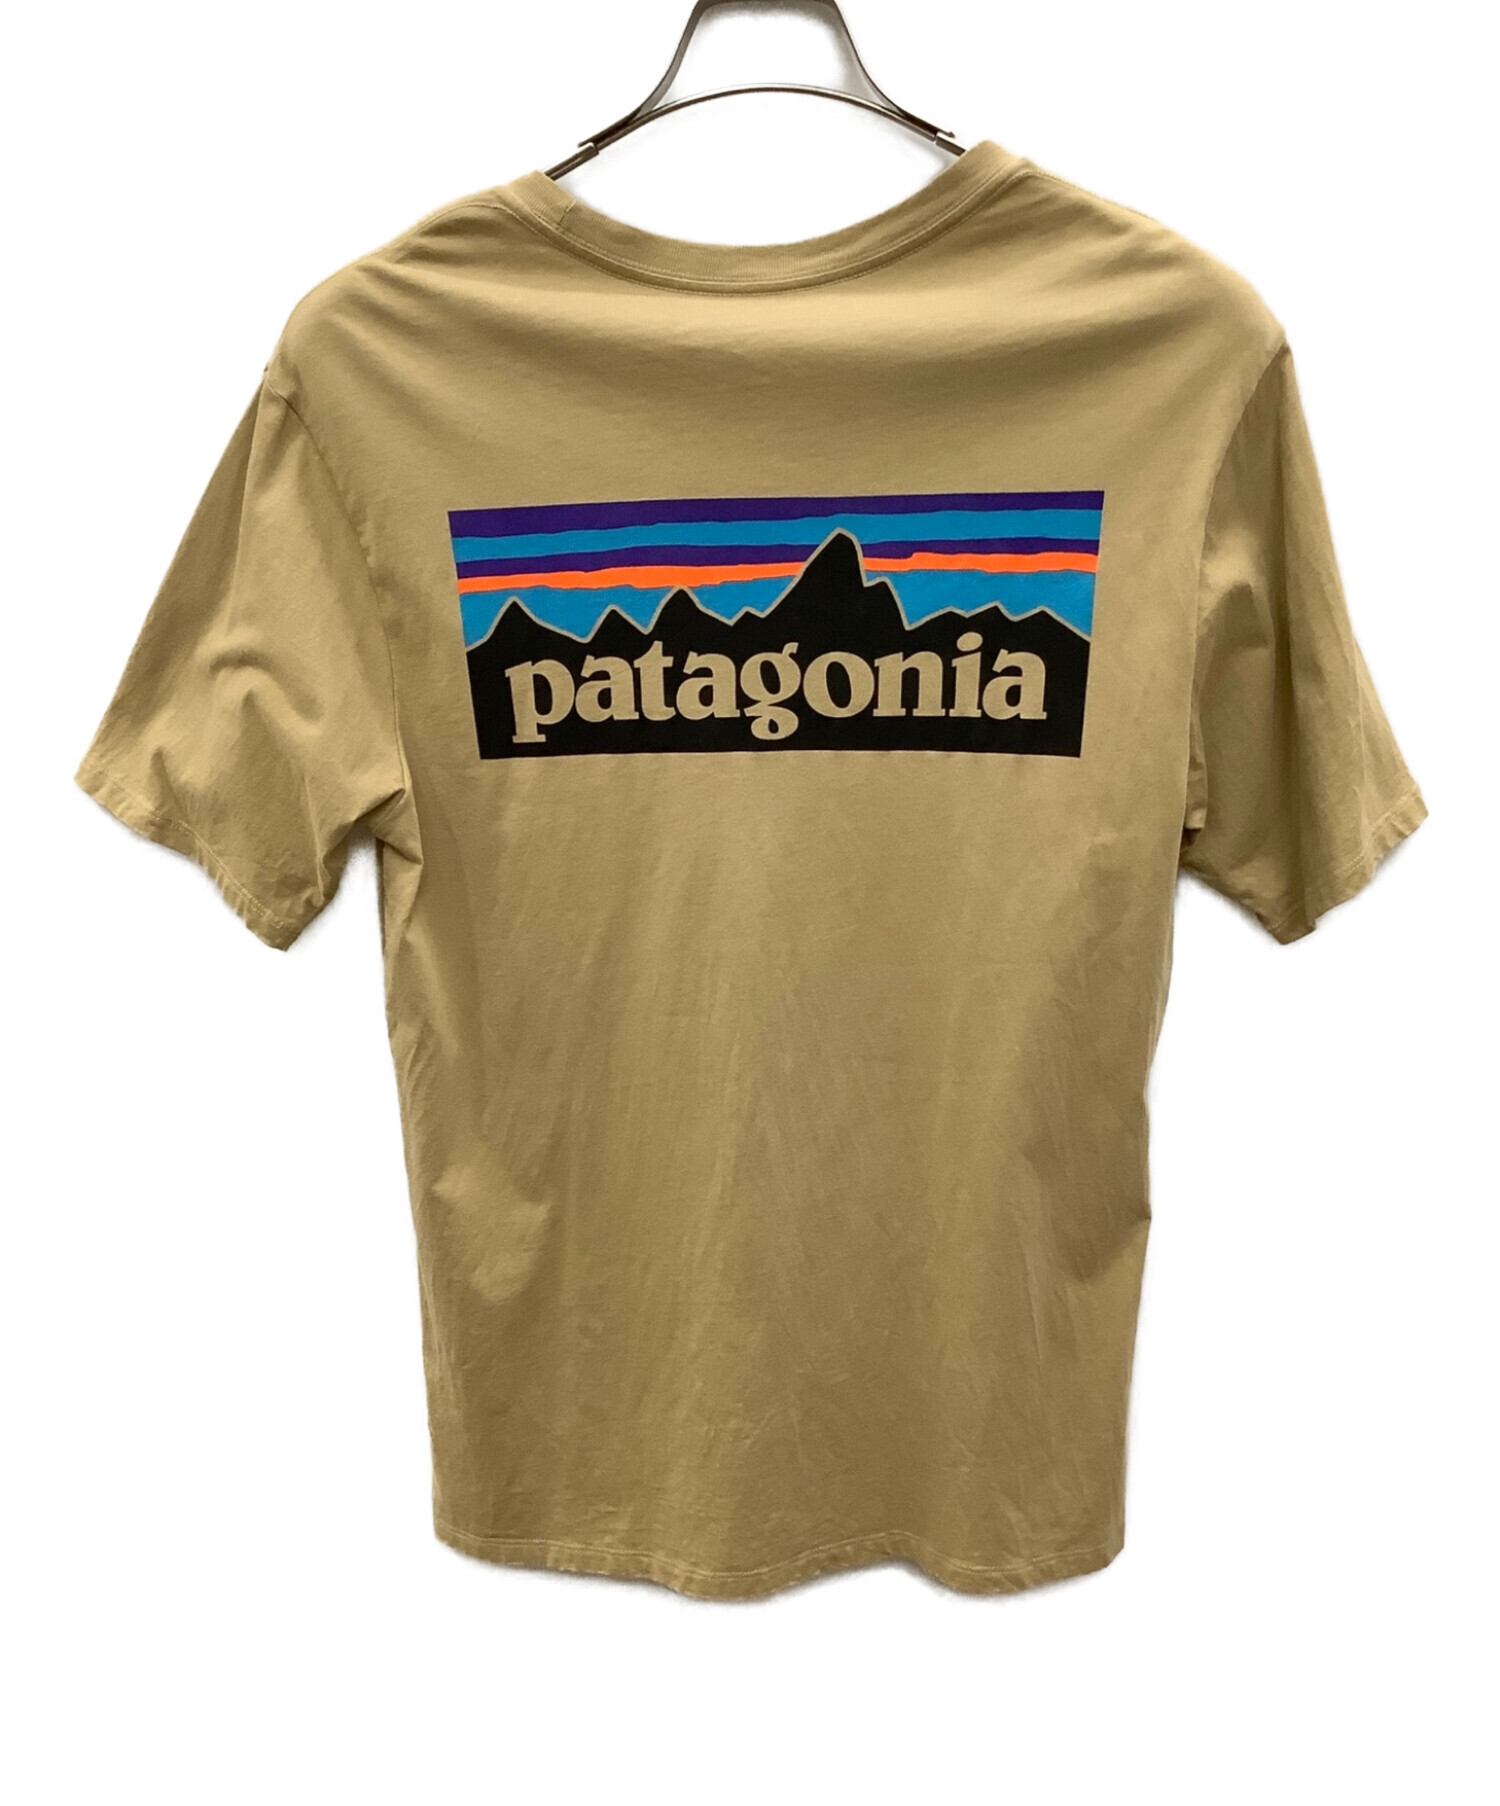 Patagonia (パタゴニア) 半袖Tシャツ ベージュ サイズ:XS